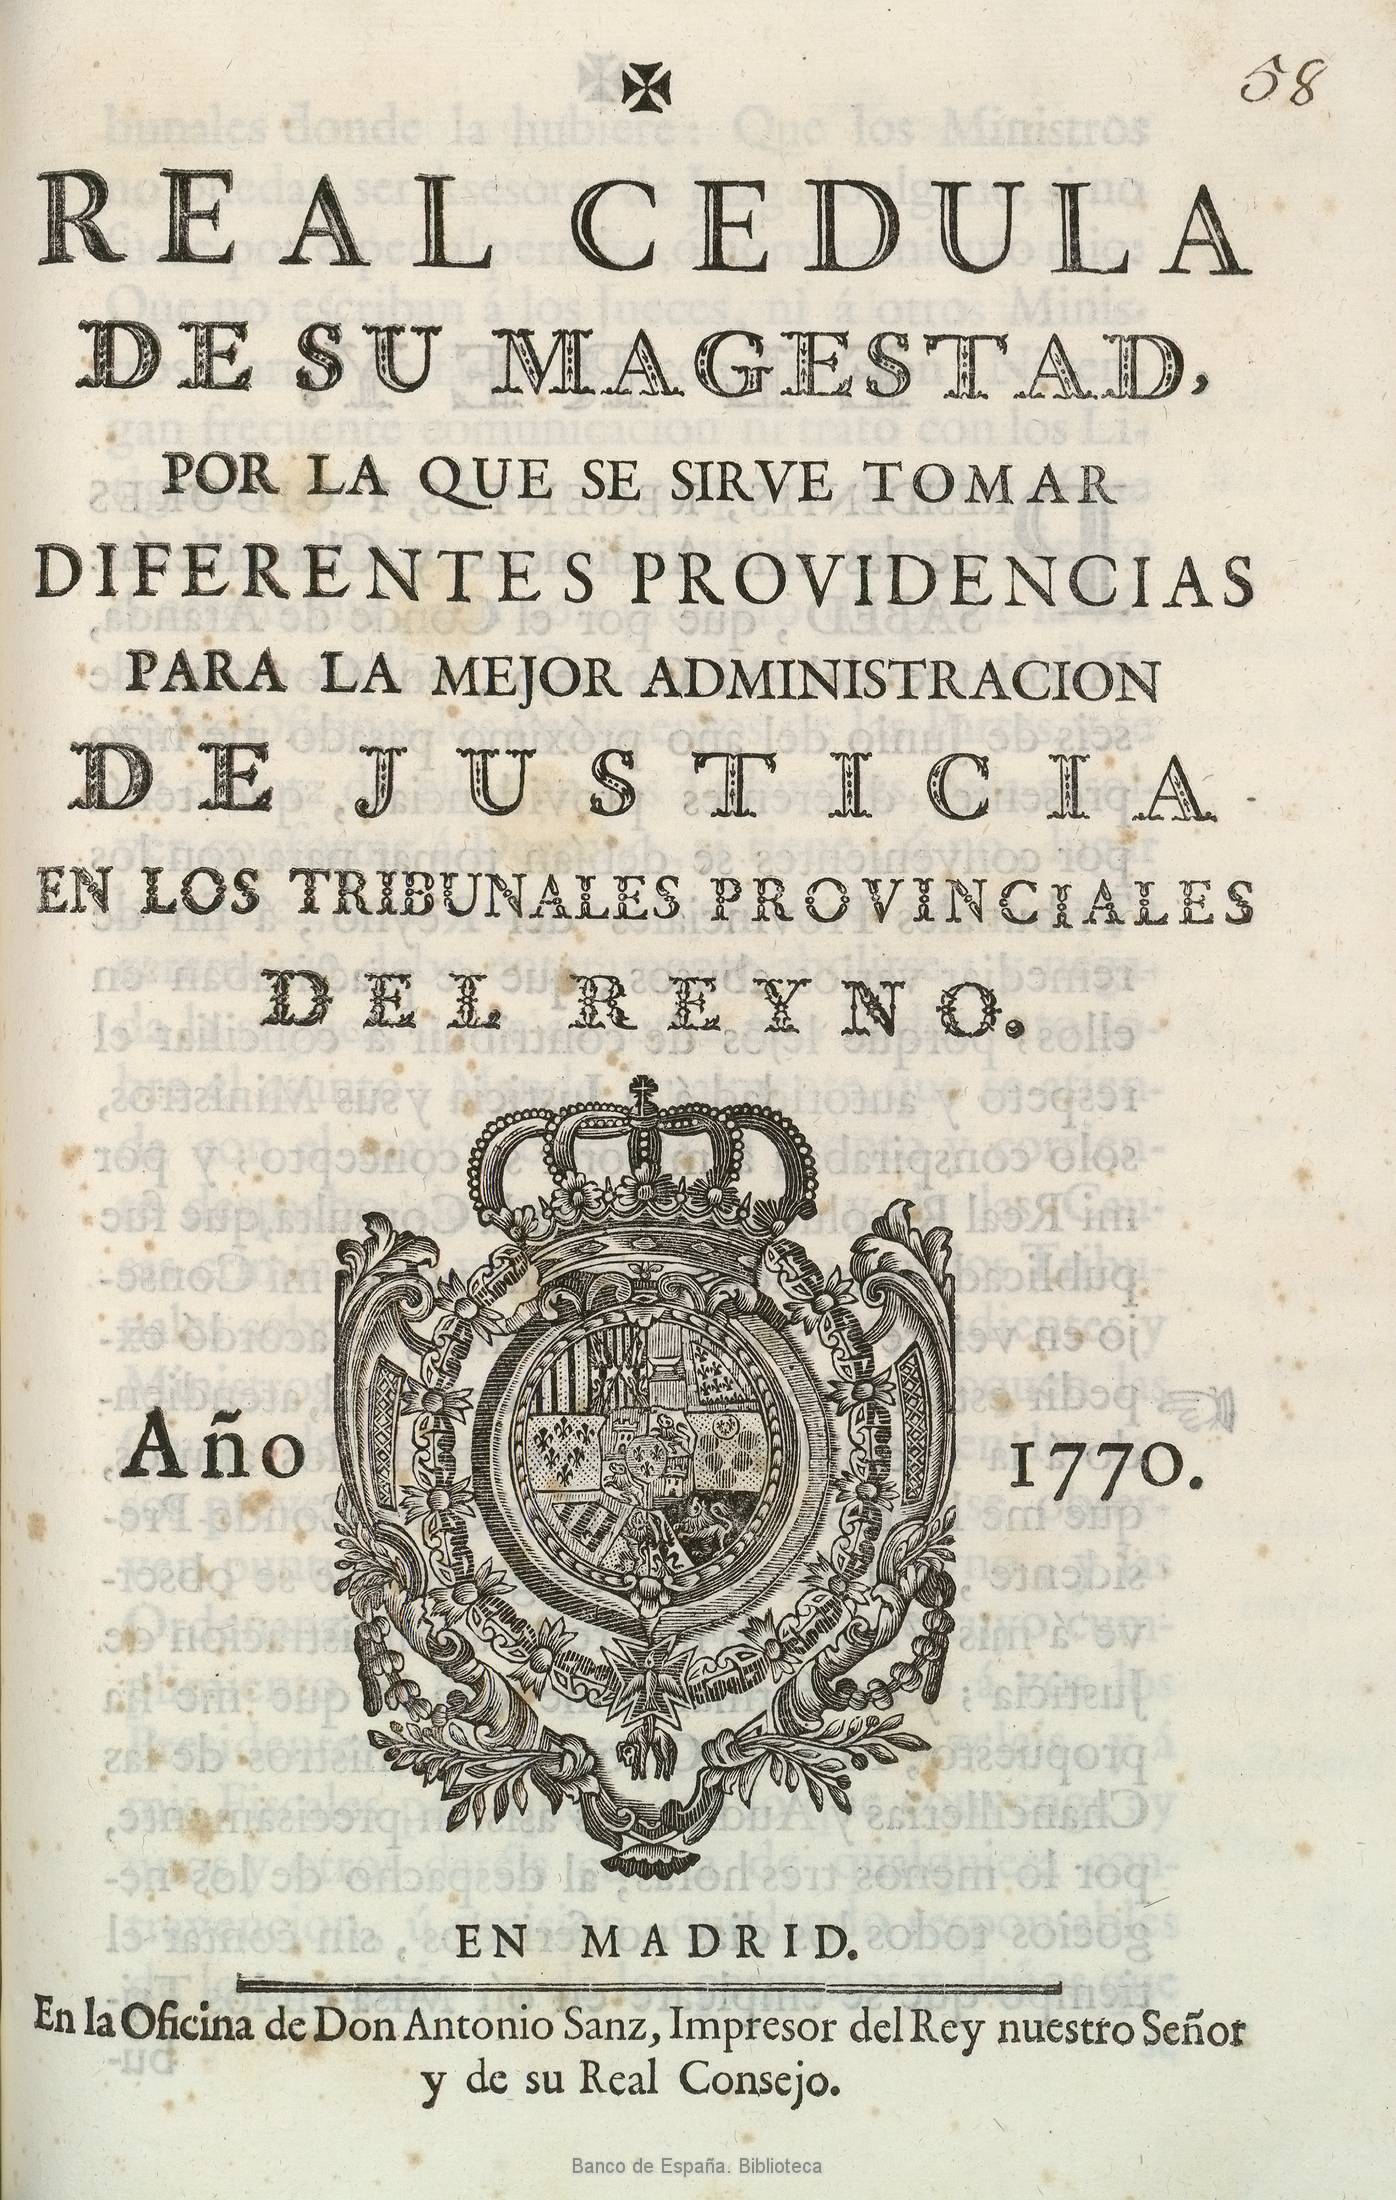 La real cédula del 10 de mayo de 1770 por Carlos III rey de España.